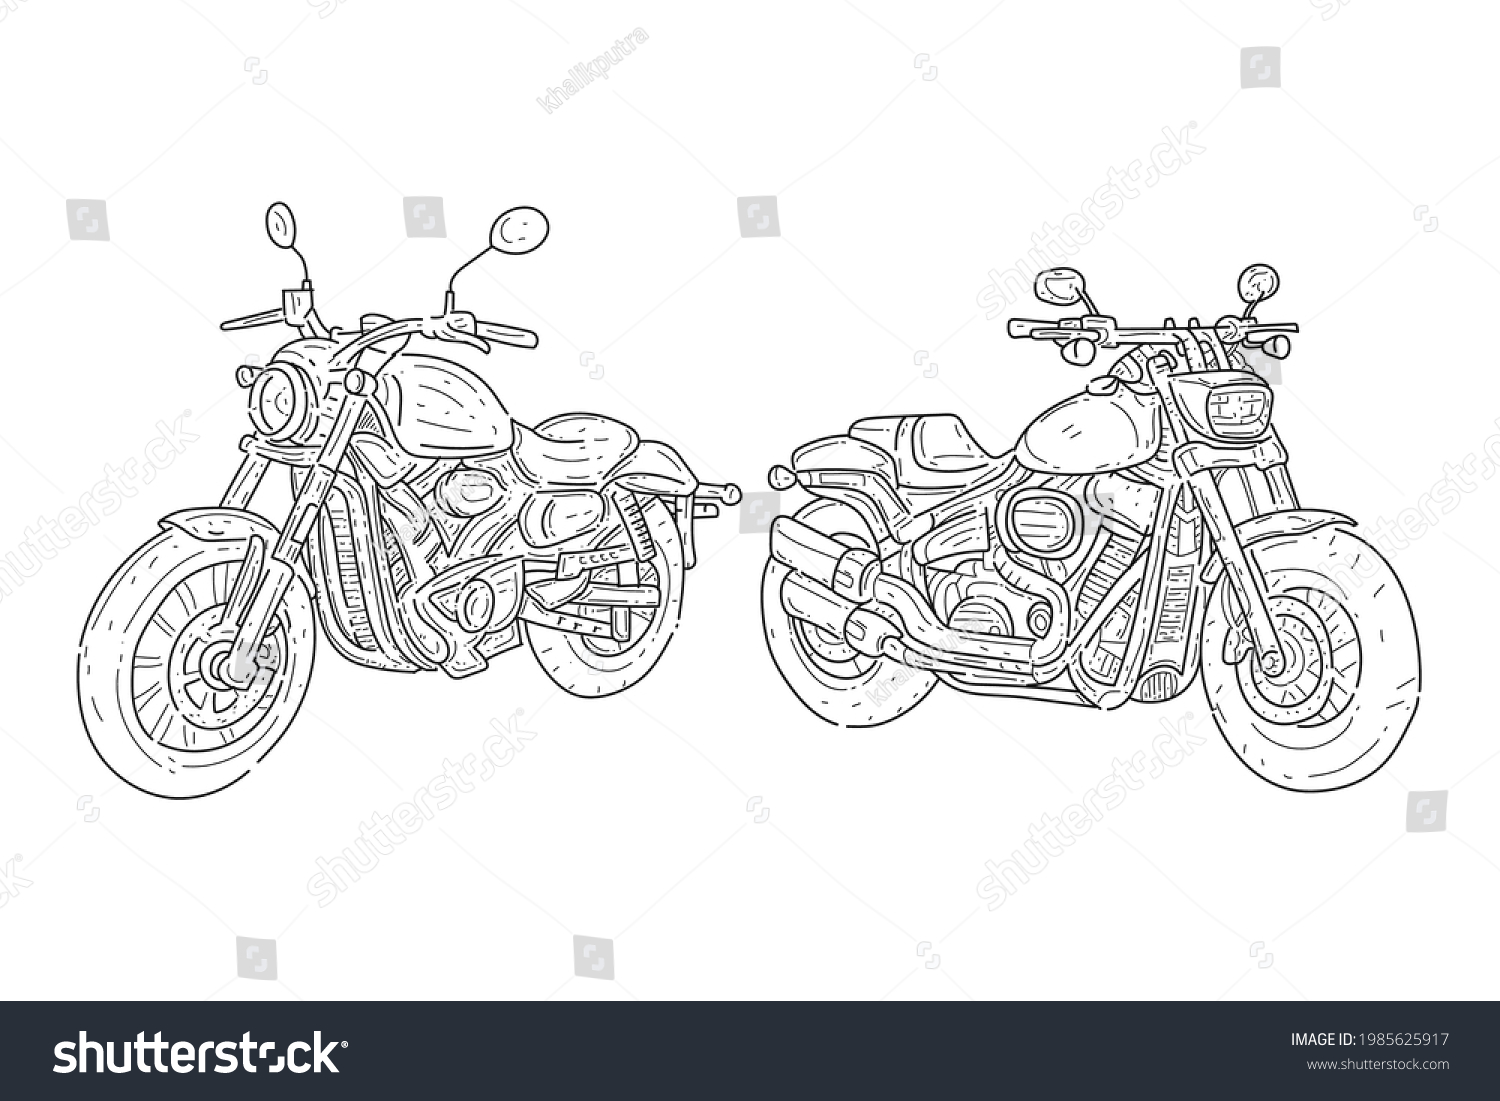 Stock Vector Super Bike Automotive Motorcycle Line Art Vector Design 1985625917 